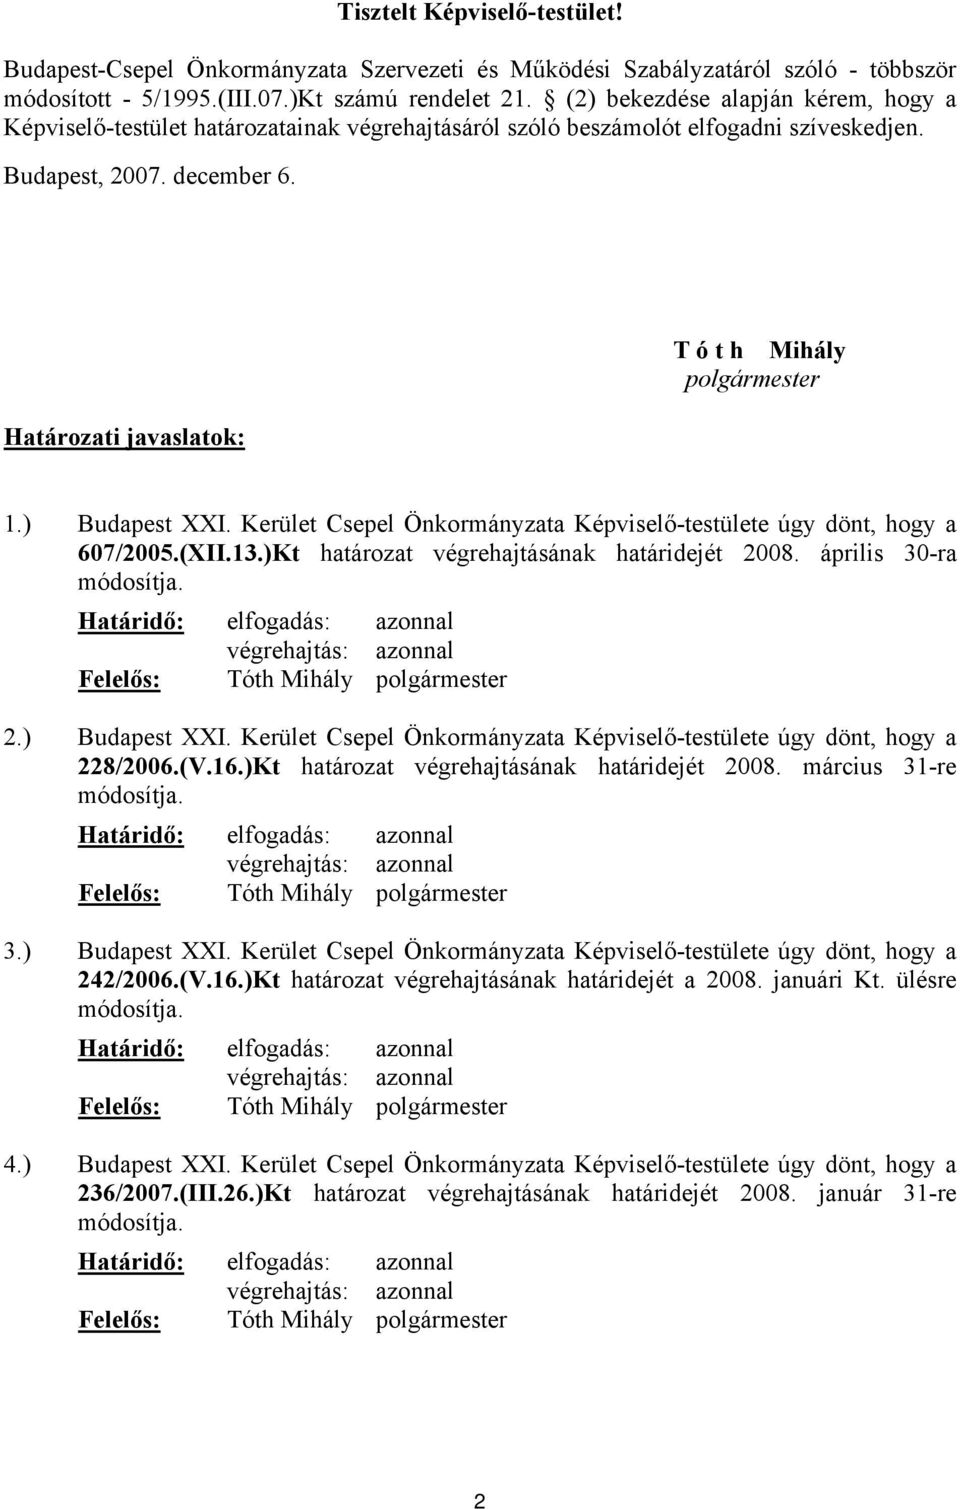 Határozati javaslatok: T ó t h Mihály polgármester 1.) Budapest XXI. Kerület Csepel Önkormányzata Képviselő-testülete úgy dönt, hogy a 607/2005.(XII.13.)Kt határozat végrehajtásának határidejét 2008.